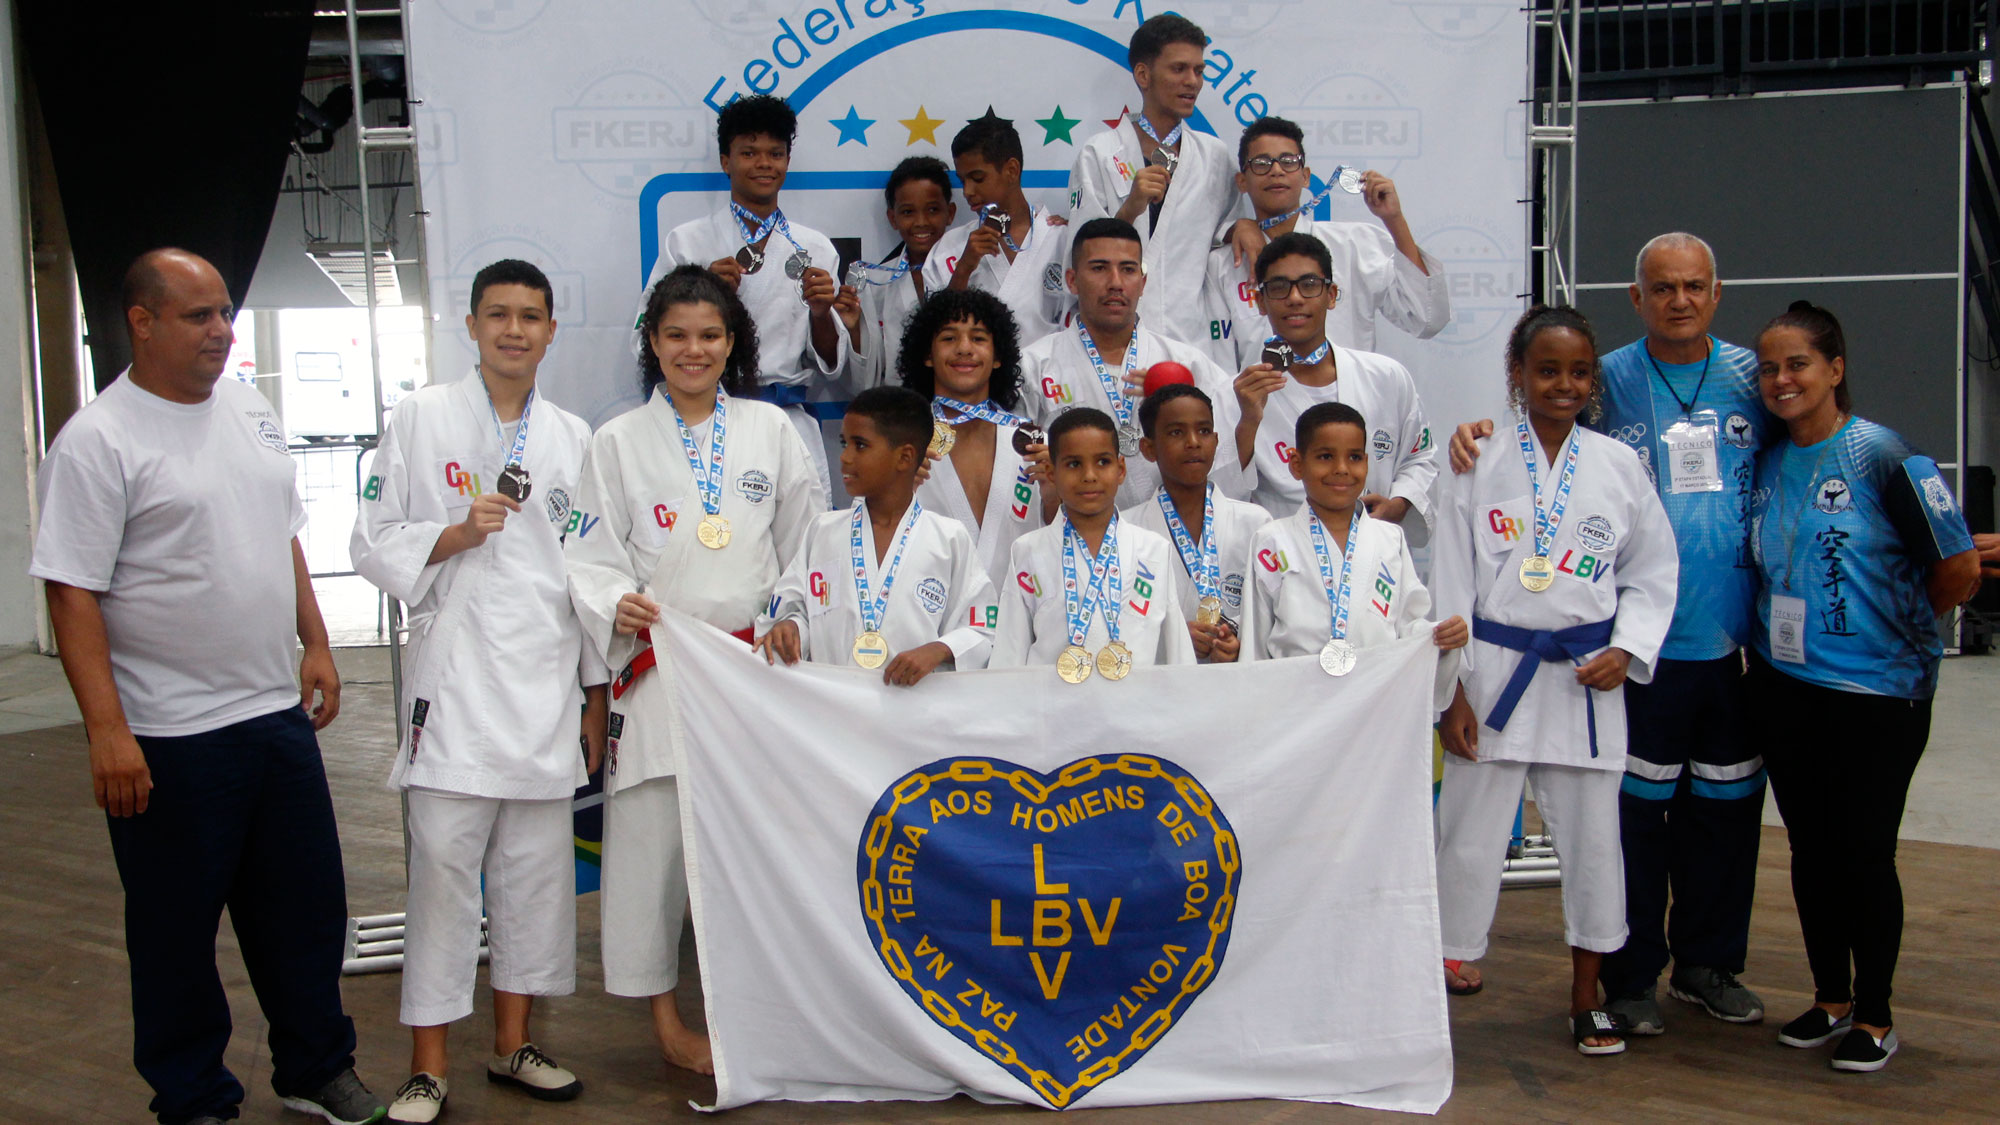 Projeto social de Manguinhos classifica 16 alunos para representar o Rio em etapa do Brasileiro de Caratê